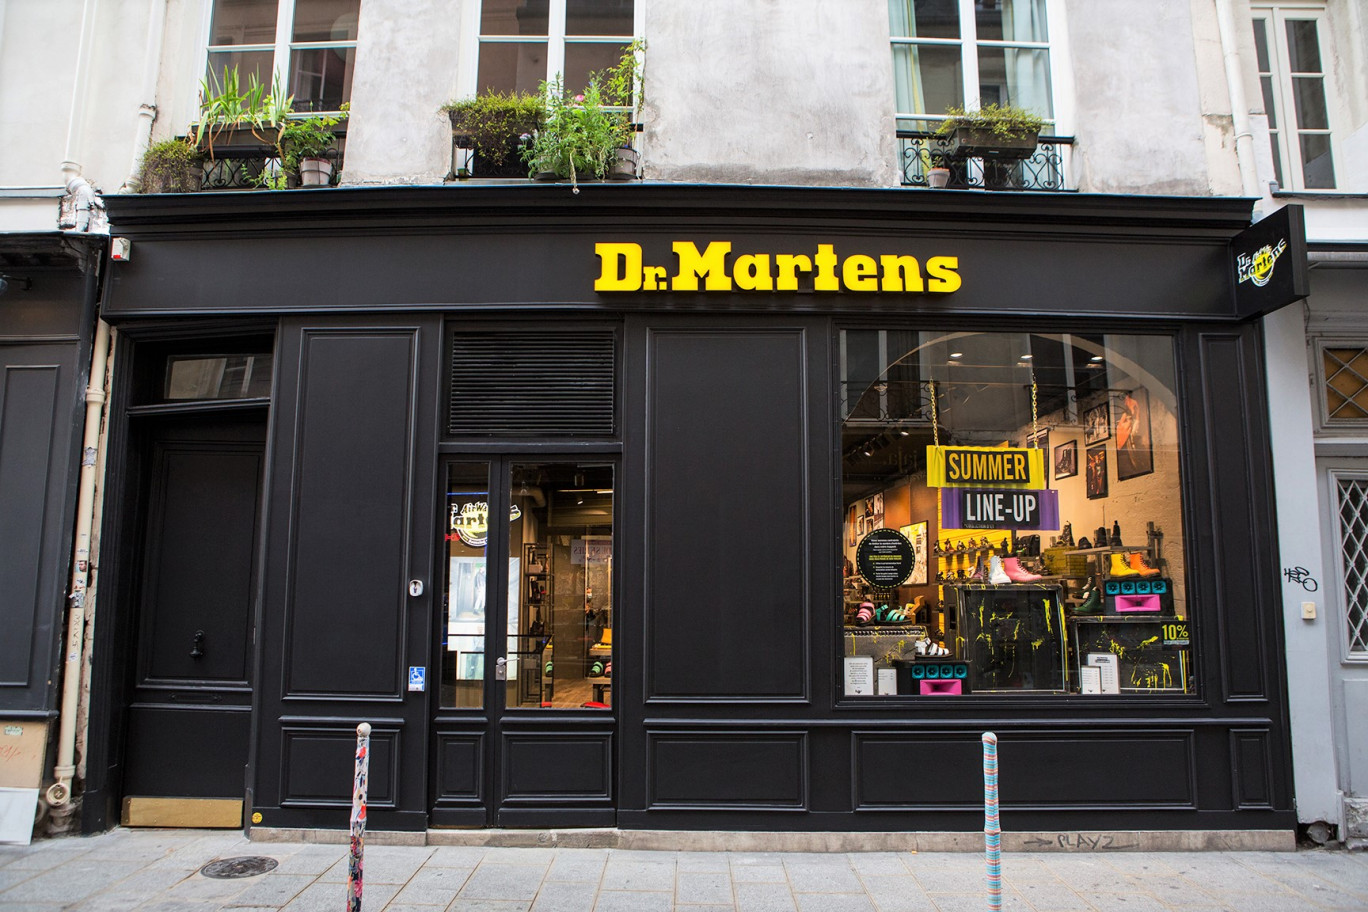 La marque emblématique de chaussures Dr. Martens ouvrira bientôt une antenne à Rouen (© Dr. Martens)..